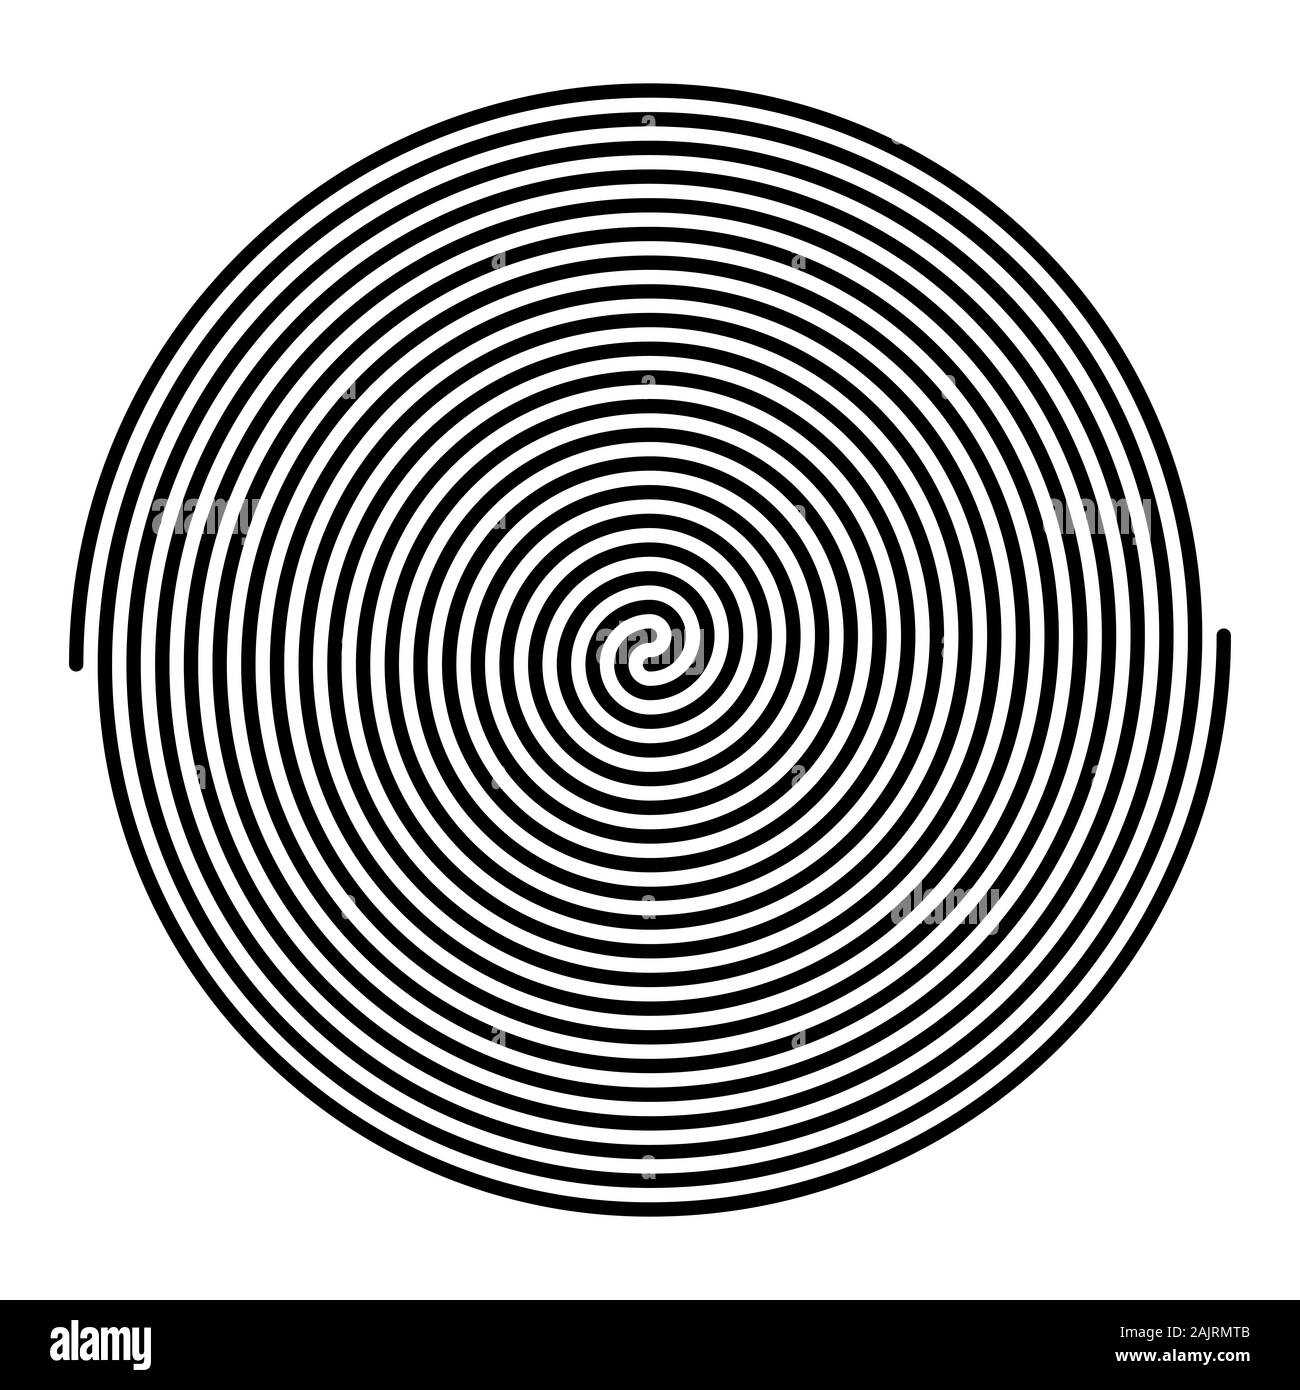 Zwei eng miteinander verwobenen Große lineare Spiralen. Archimedische Spiralen der Farbe schwarz mit 10 Drehungen von zwei Armen der arithmetischen Spiralen. Stockfoto